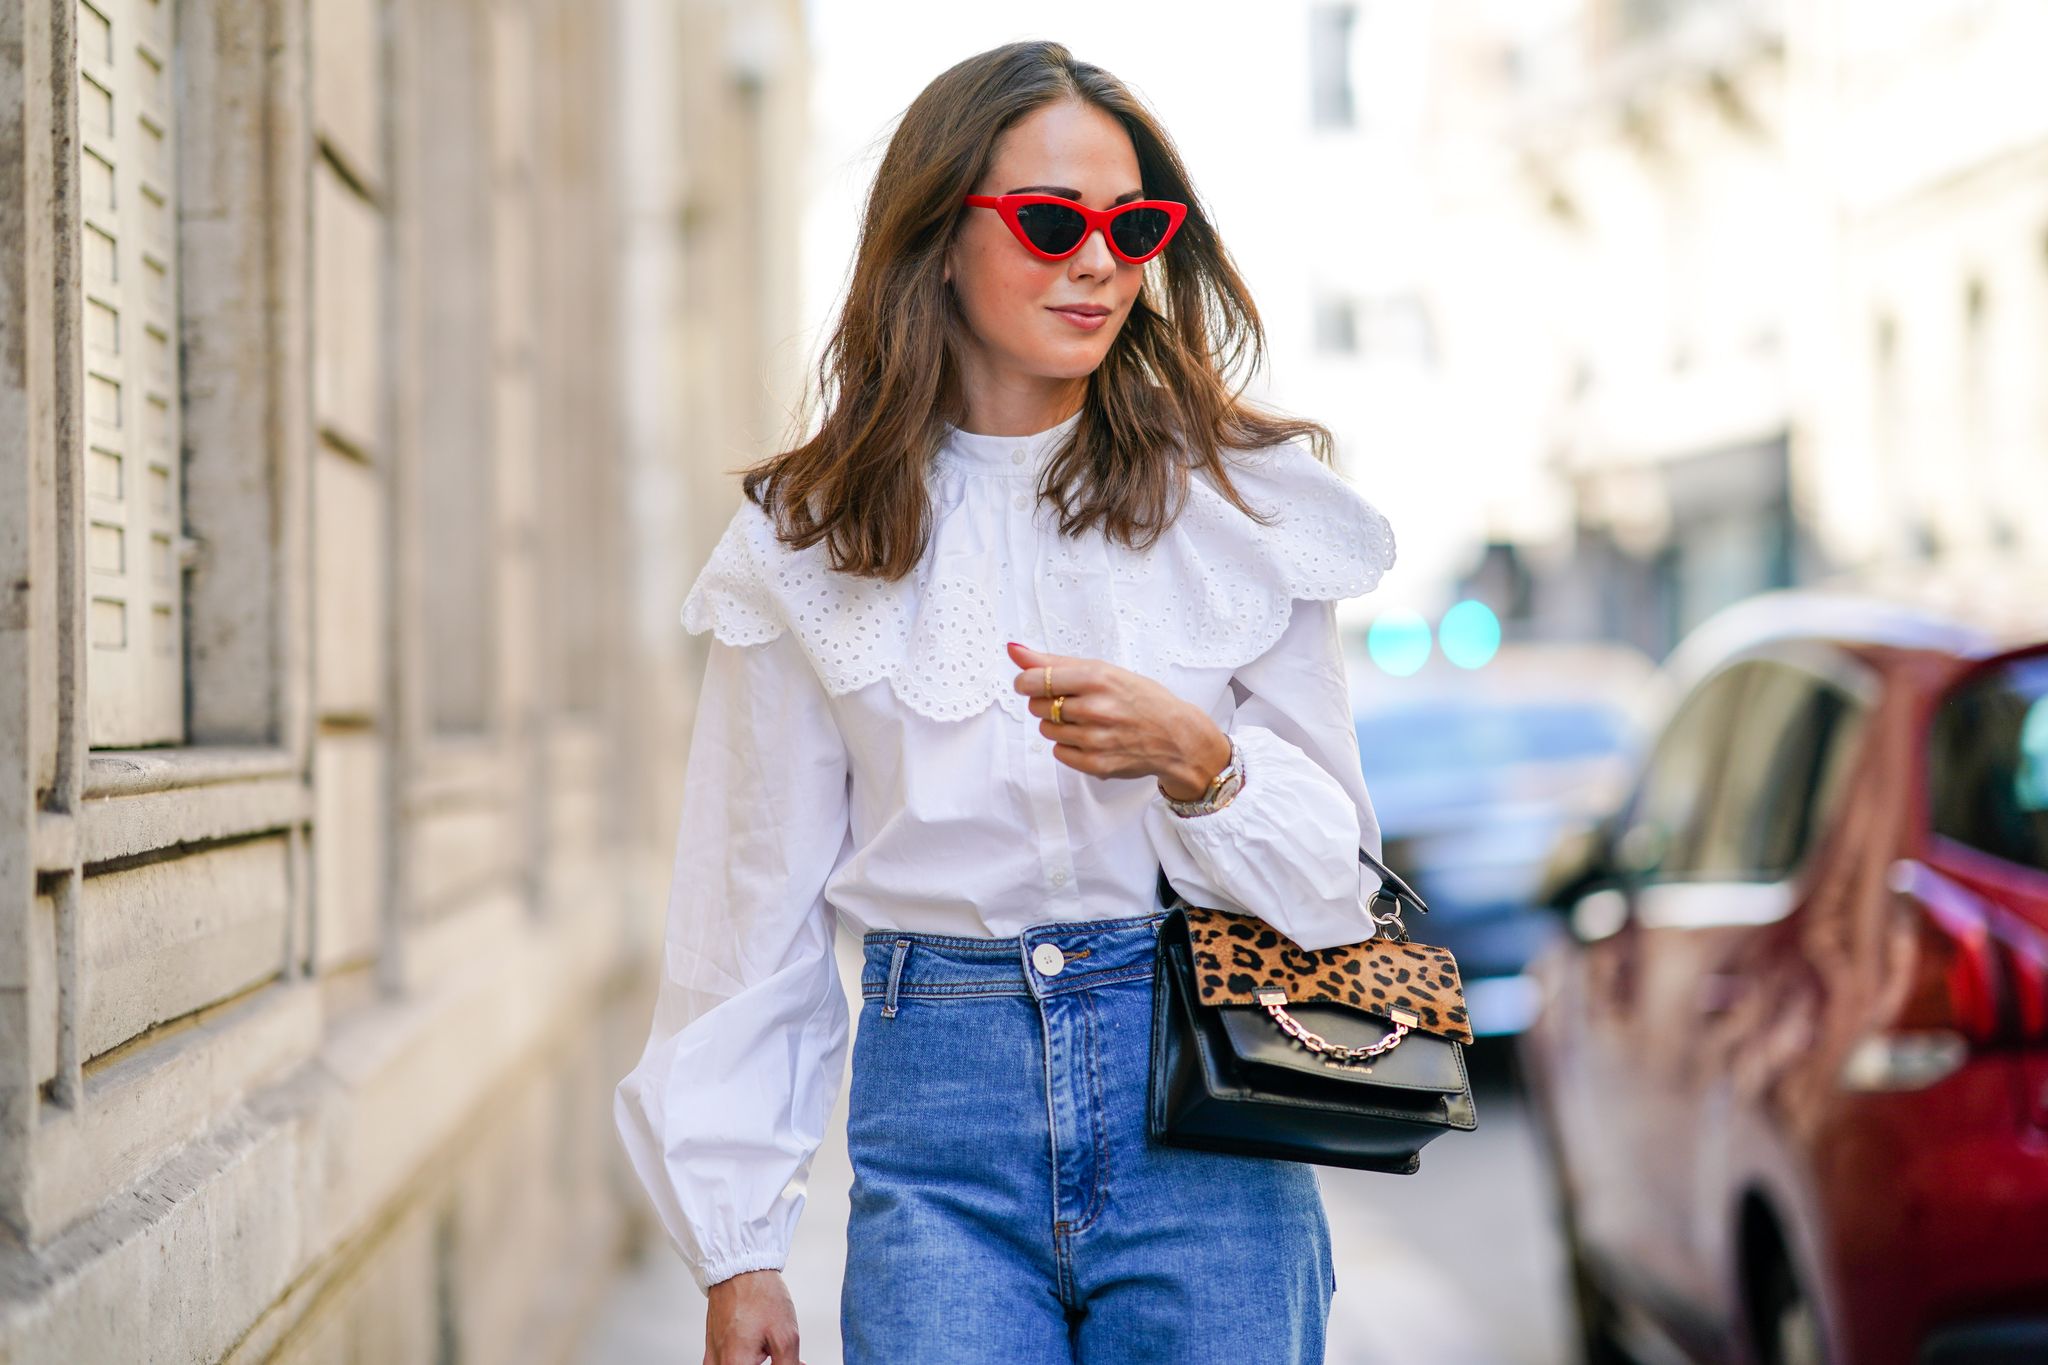 Primero legación Luminancia La blusa romántica de H&M que triunfa en Instagram - H&M Camisa